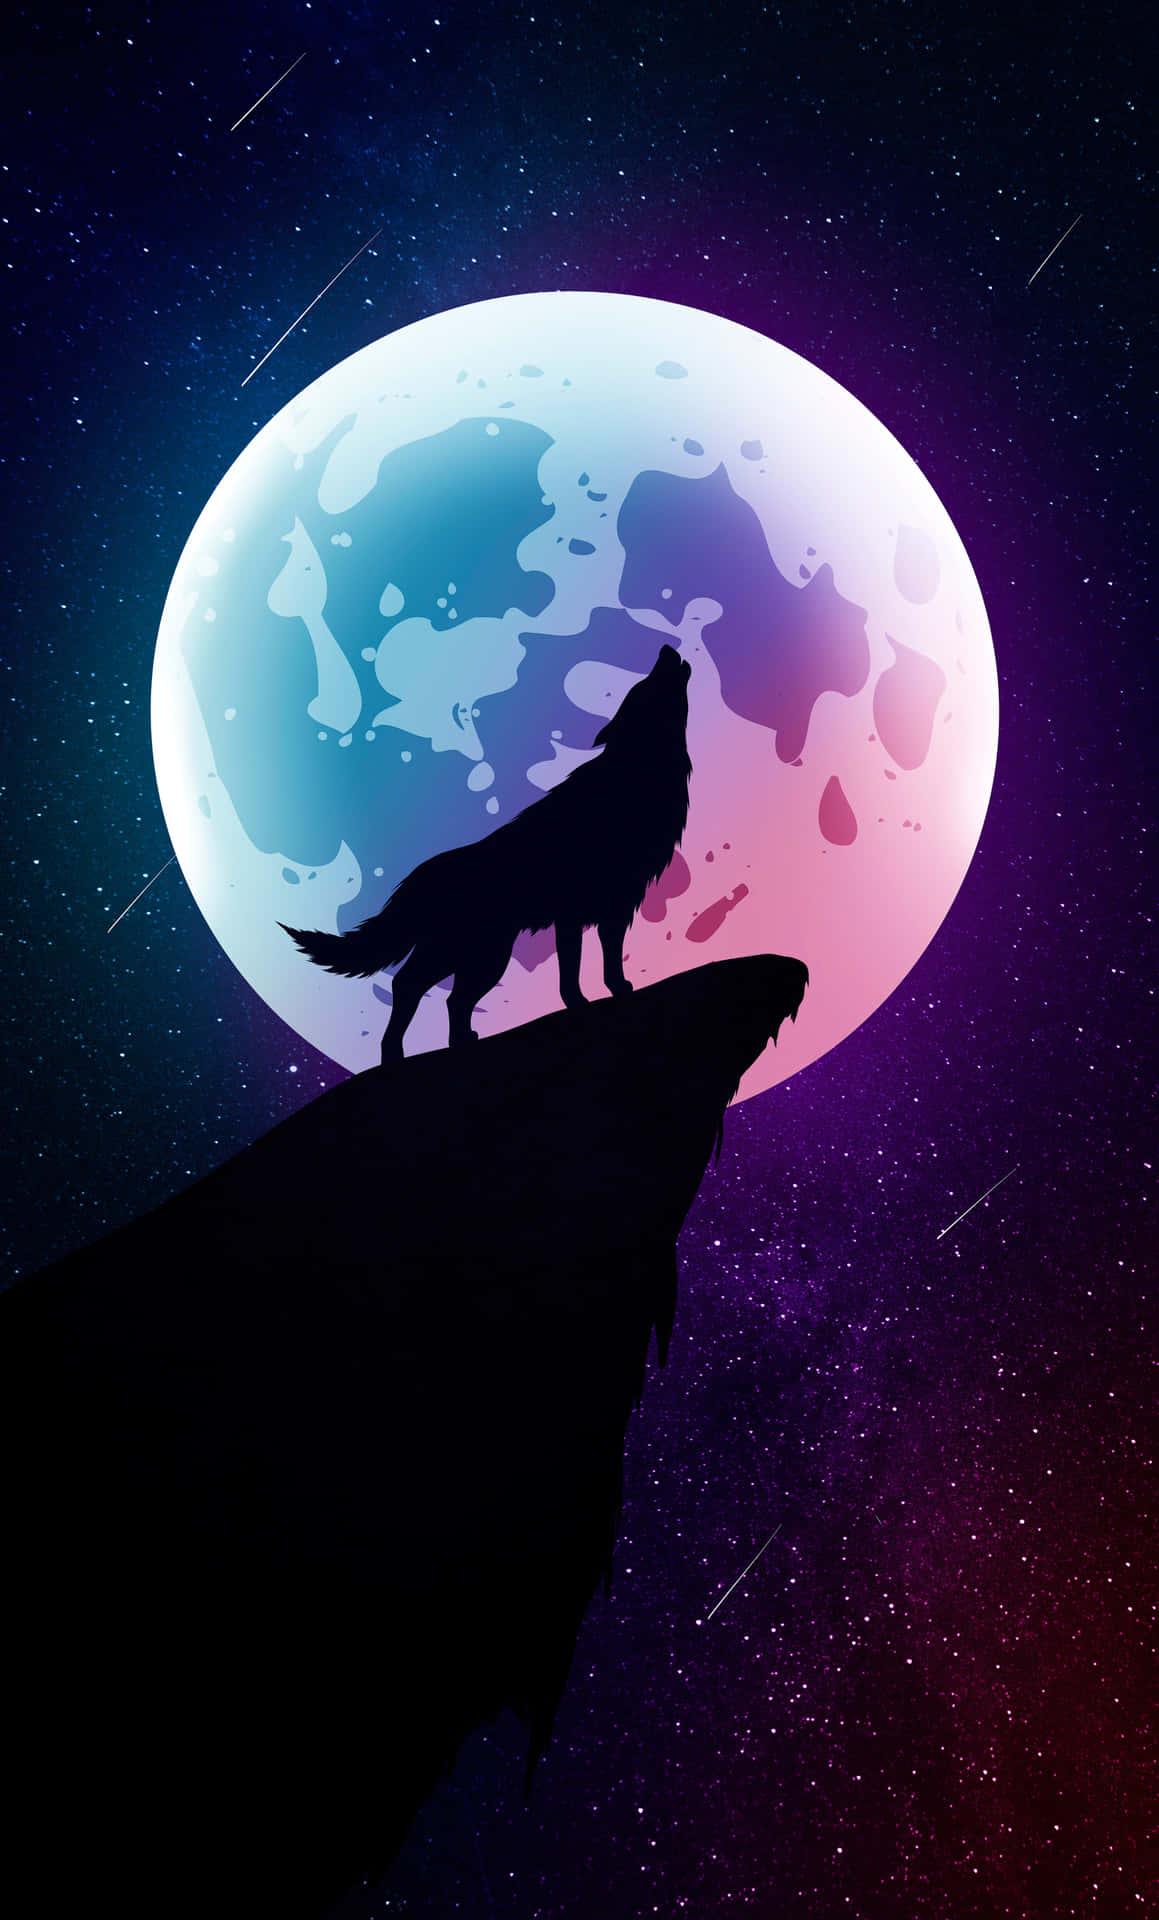 Hình nền Mặt trăng sói miễn phí: Điểm tô cho màn hình điện thoại của bạn với hình nền Mặt trăng sói đẹp nhất. Chúng tôi đã tìm kiếm và sưu tầm các hình ảnh tuyệt đẹp của Mặt trăng sói để chia sẻ miễn phí cho bạn. Hãy tải về hình ảnh này để biến màn hình của bạn thành một tác phẩm nghệ thuật thực sự.